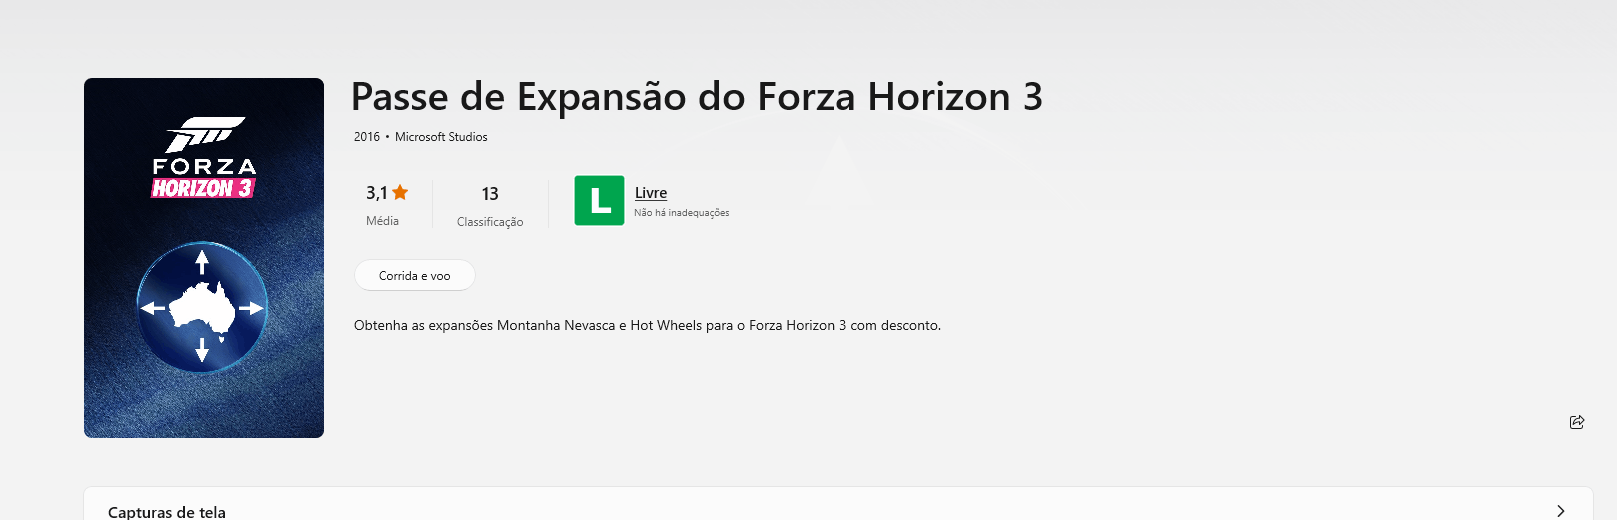 Forza Horizon 3 - Blizzard Mountain DLC XBOX One / Windows 10 CD